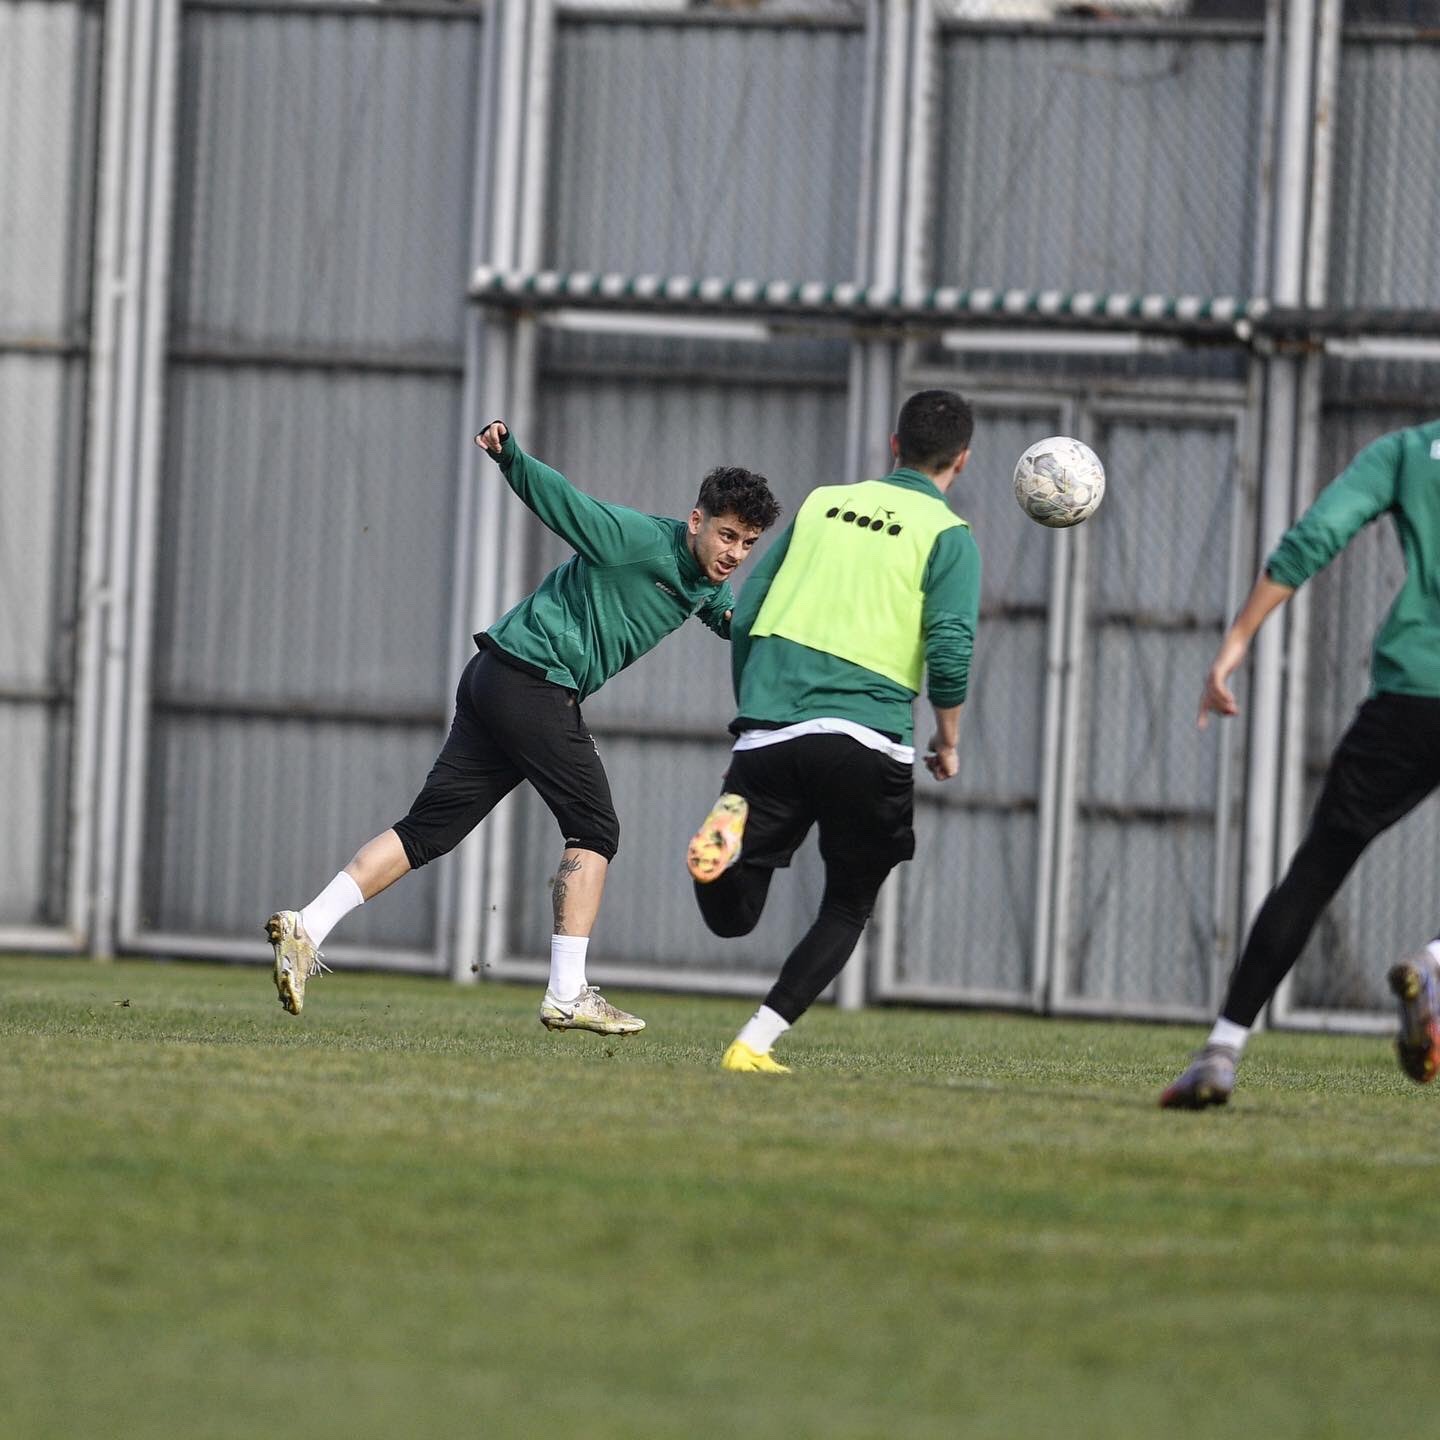 Bursaspor, Afyonspor maçı hazırlıklarını tamamladı